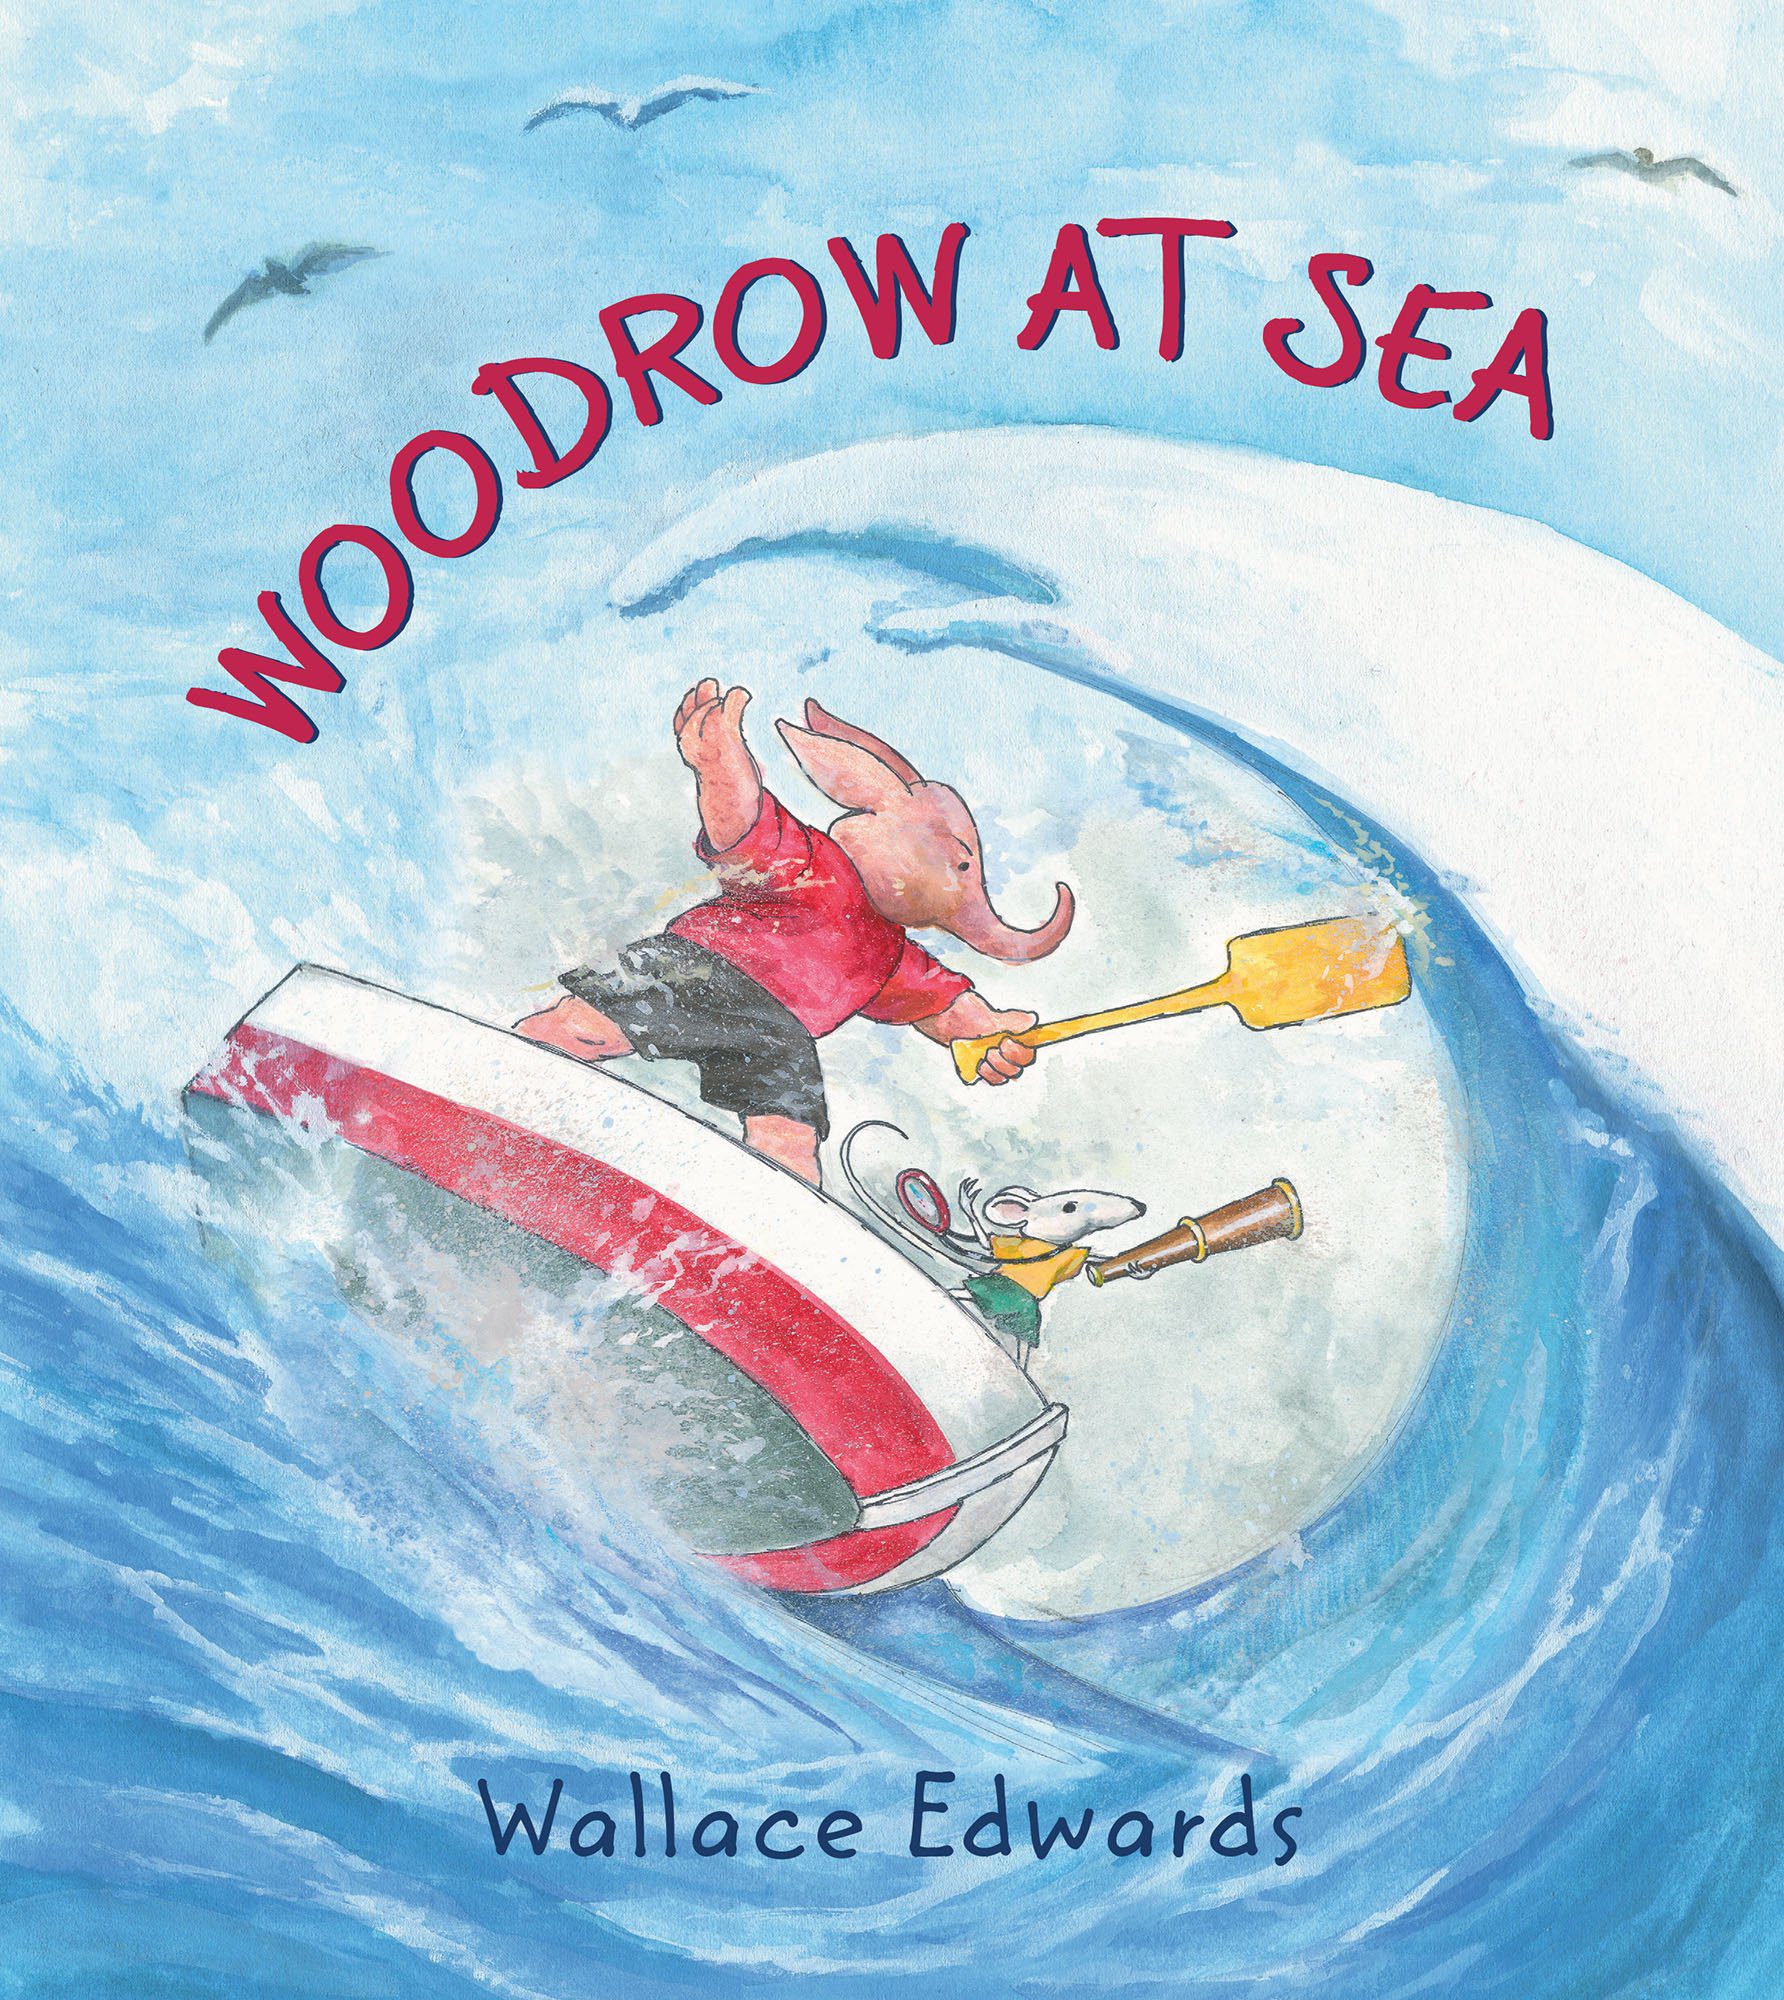 Woodrow at Sea